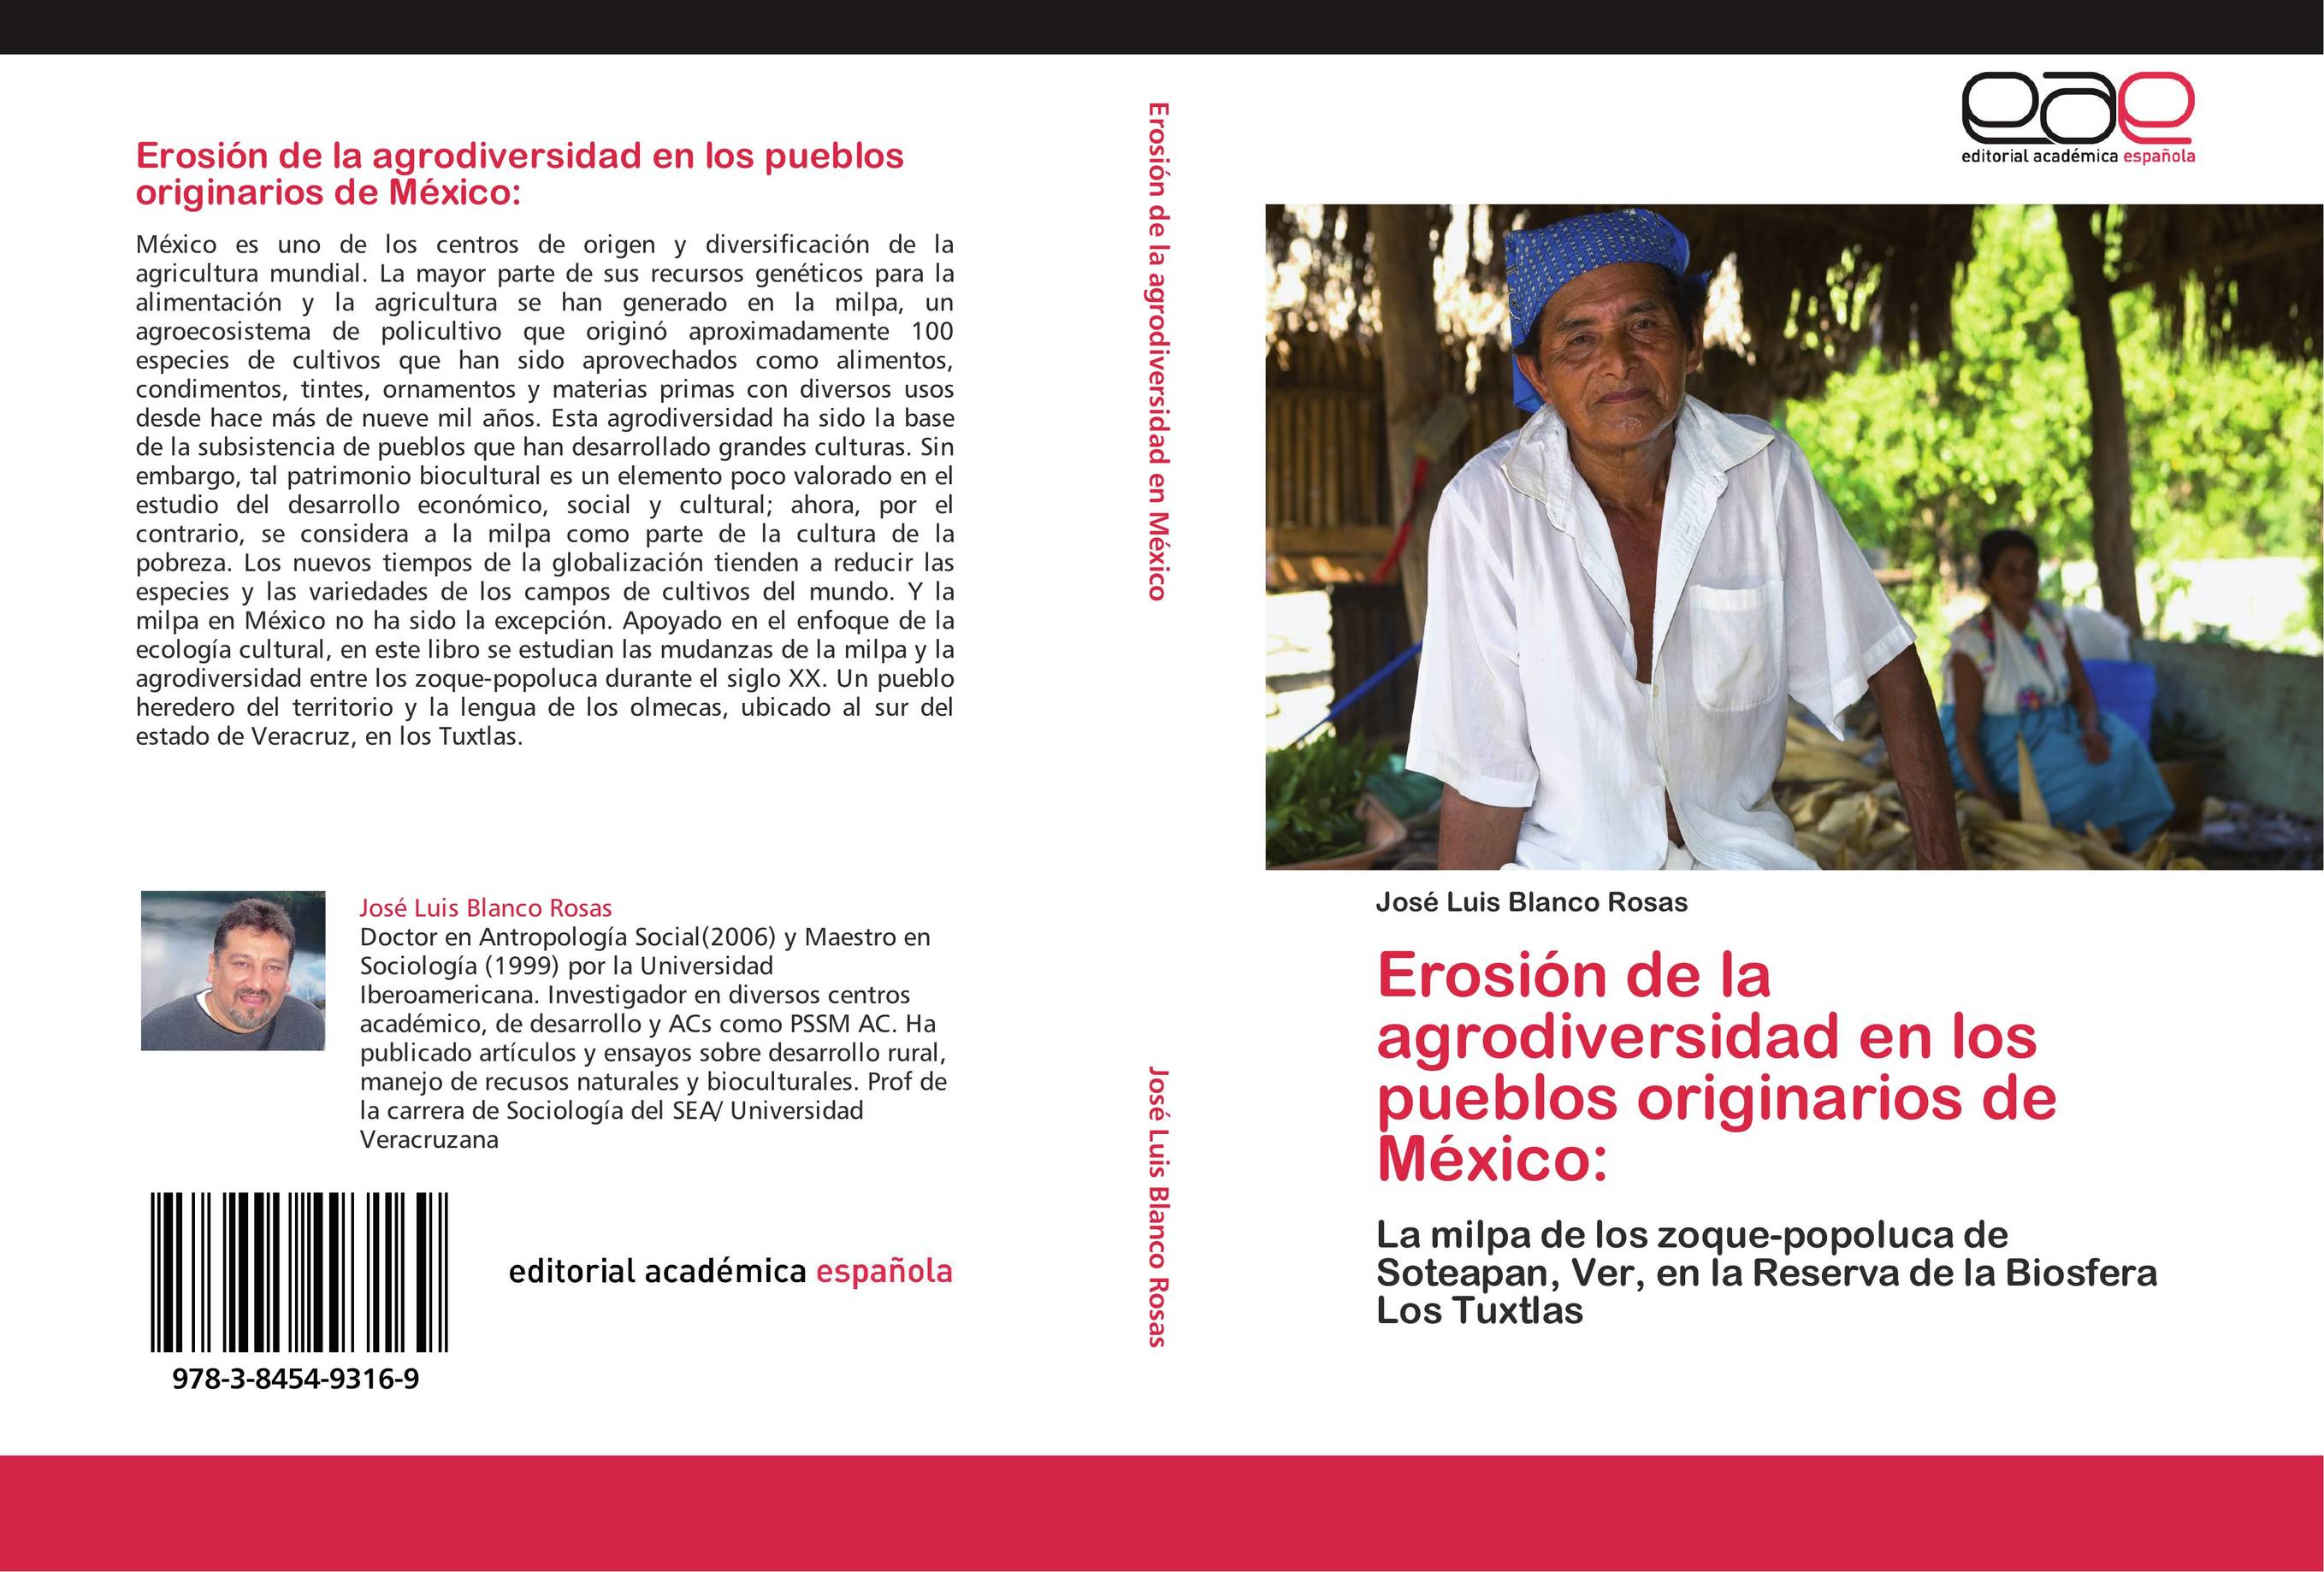 Erosión de la agrodiversidad en los pueblos originarios de México: